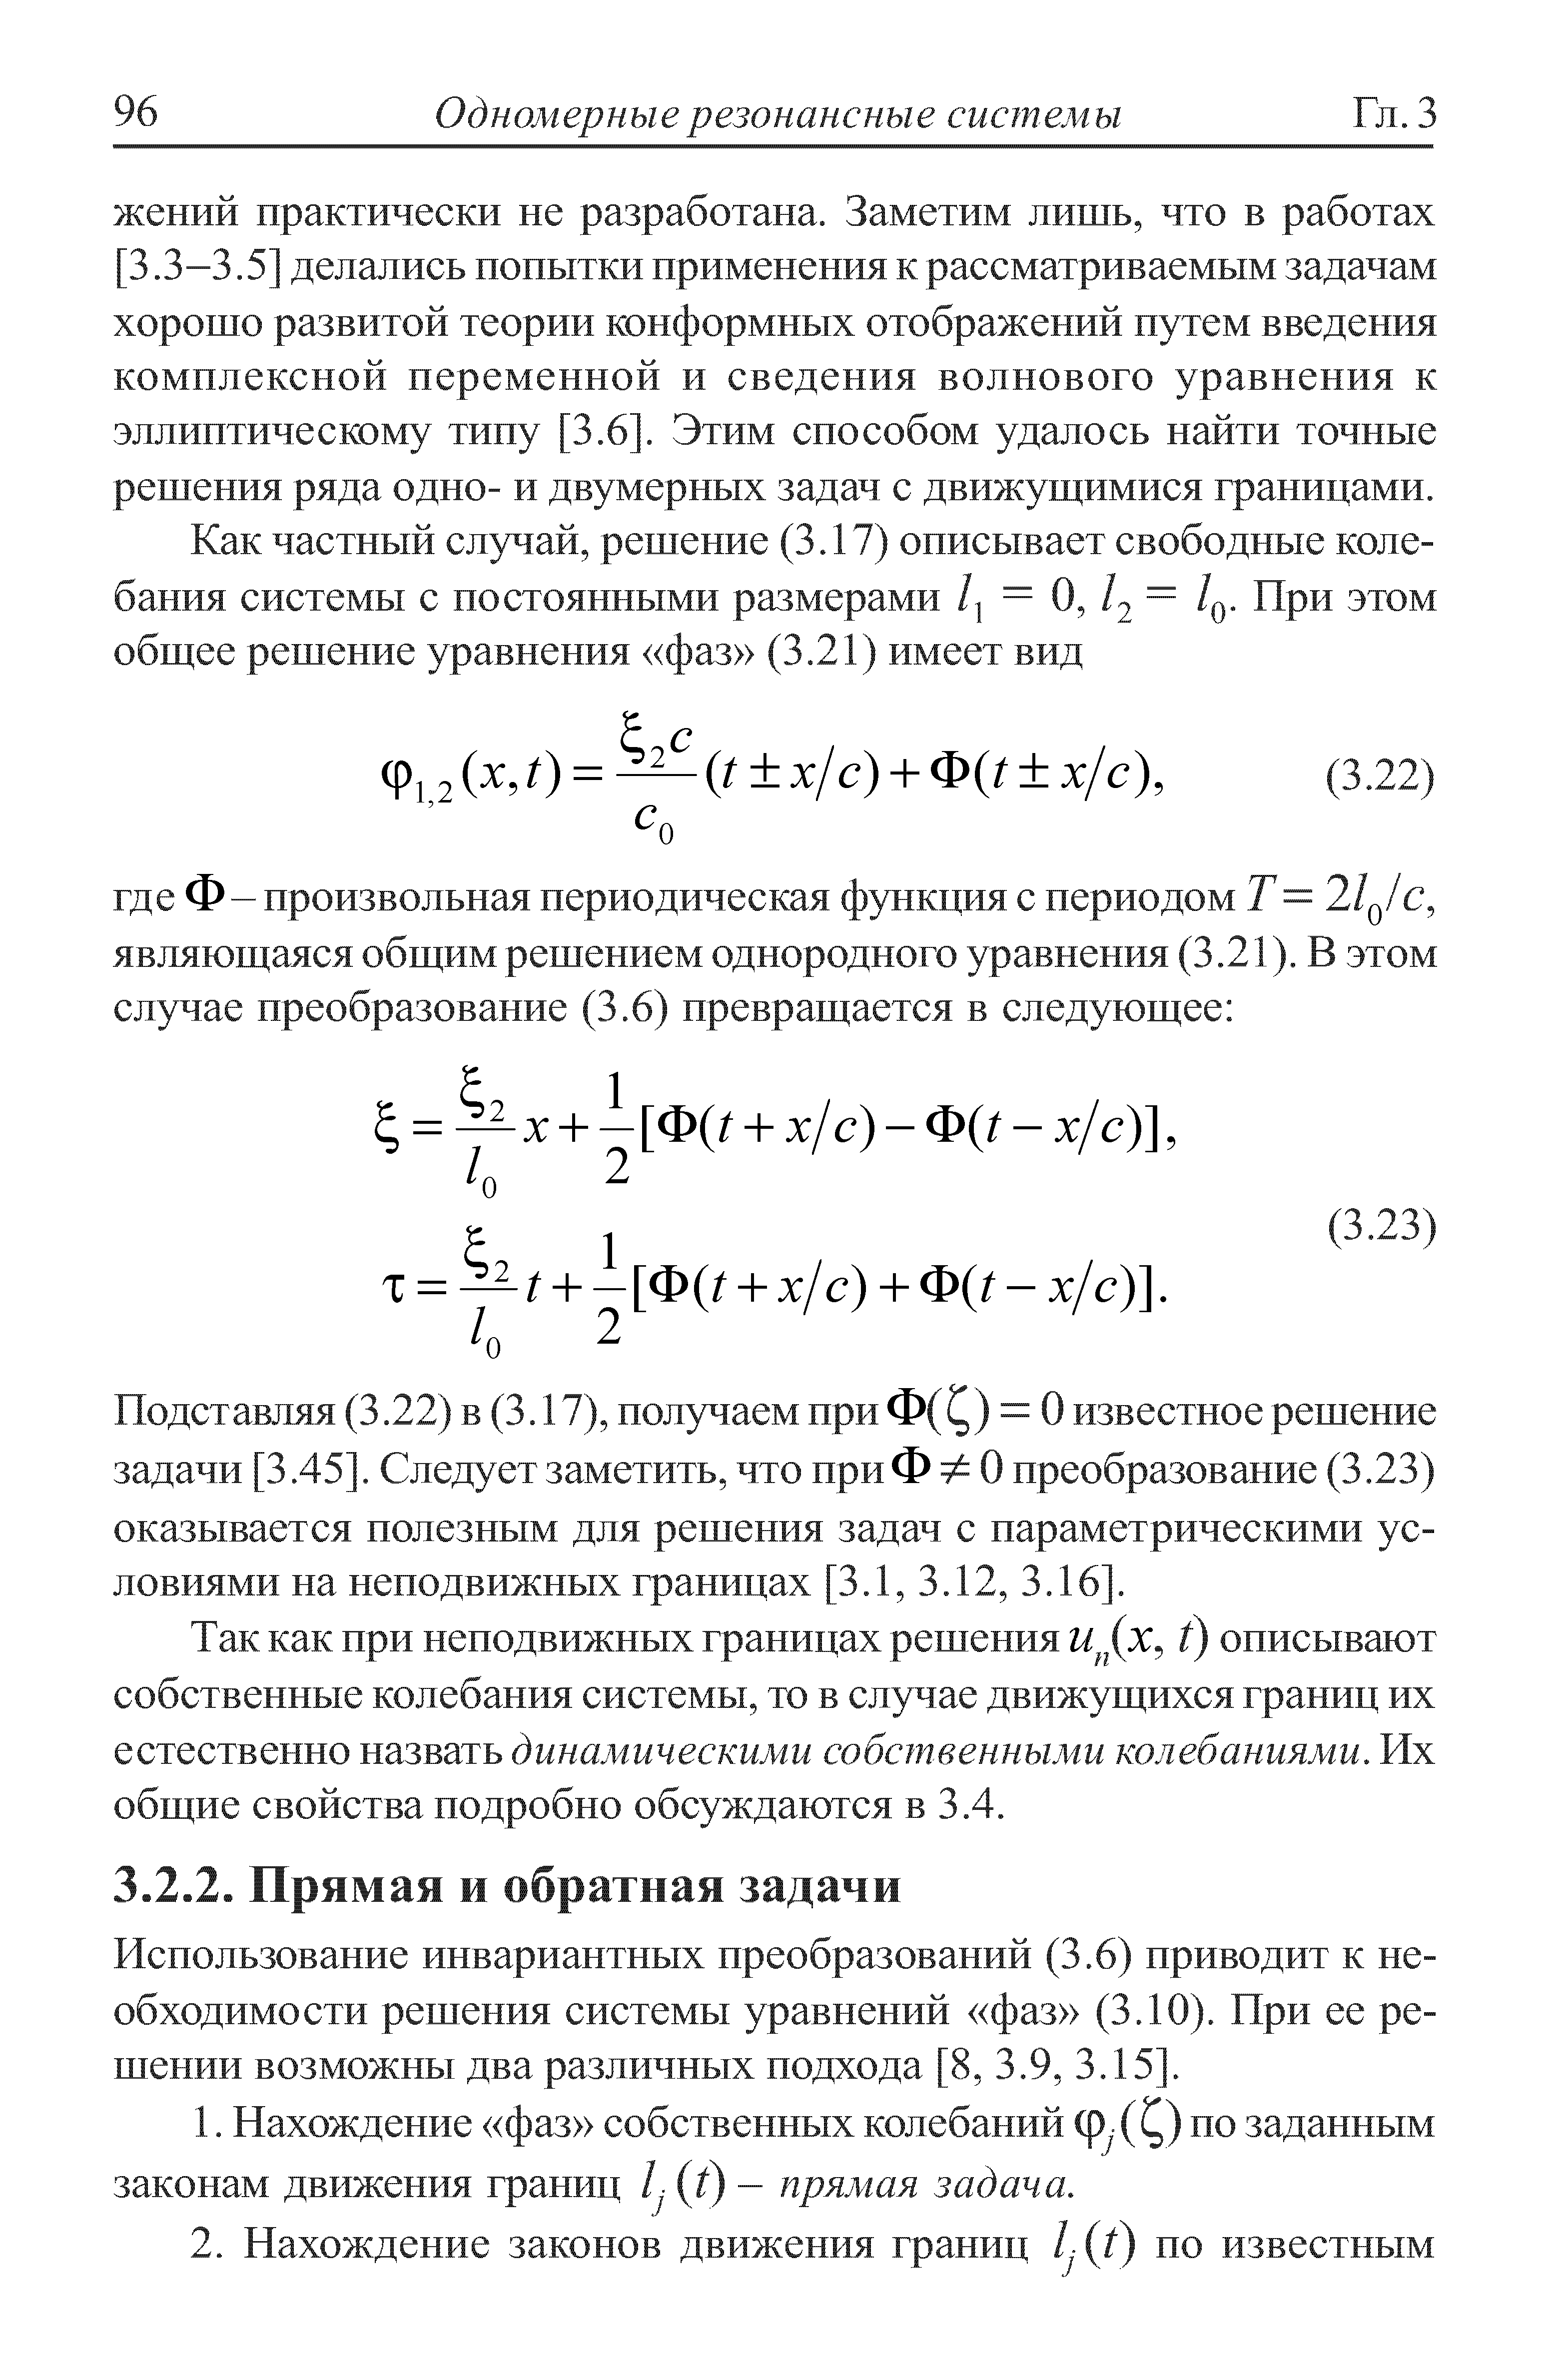 Использование инвариантных преобразований (3.6) приводит к необходимости решения системы уравнений фаз (3.10). При ее решении возможны два различных подхода [8, 3.9, 3.15 .
